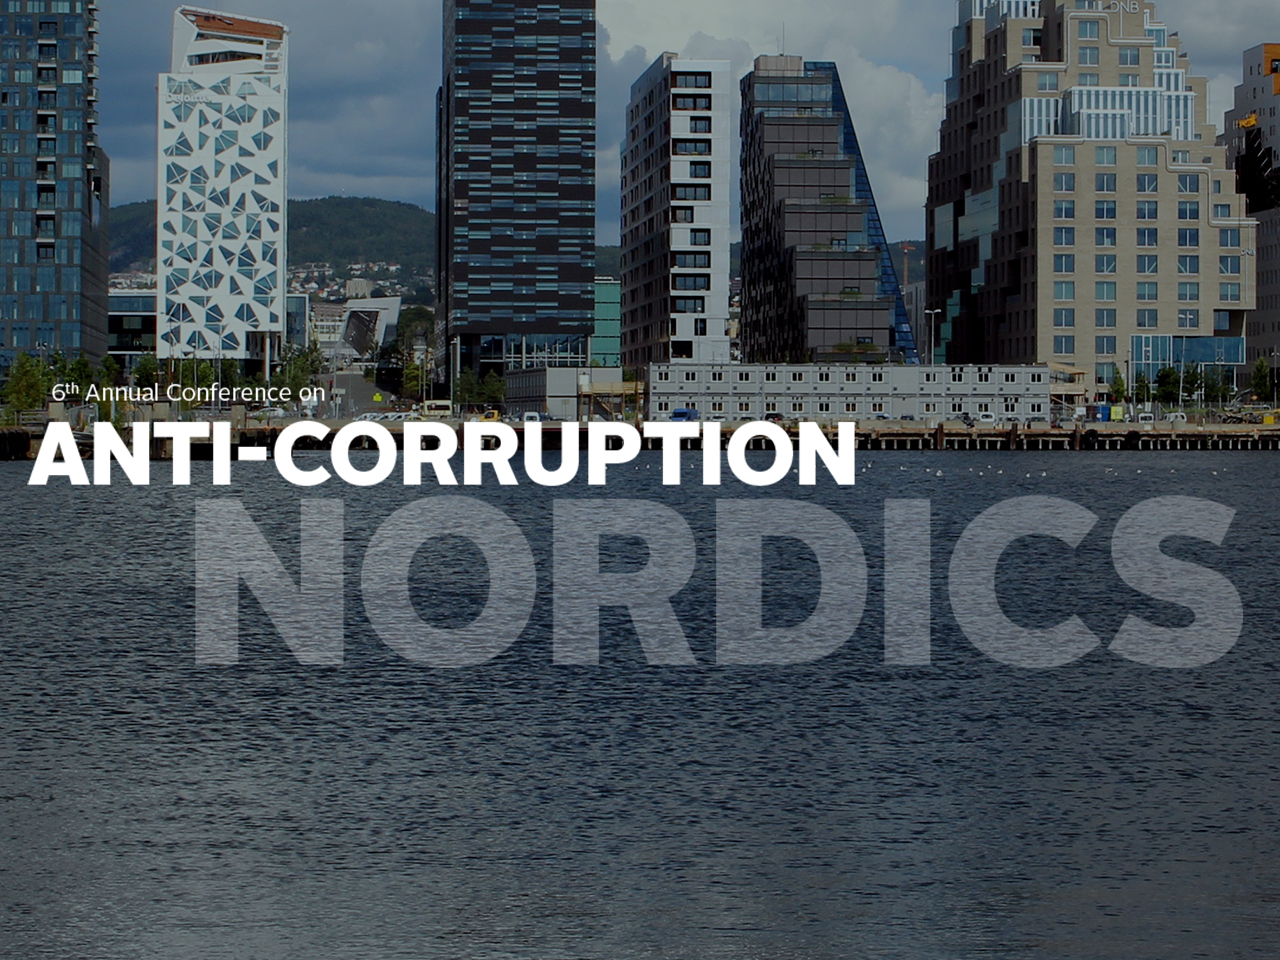 6th Annual Conference on Anti-Corruption Nordics 